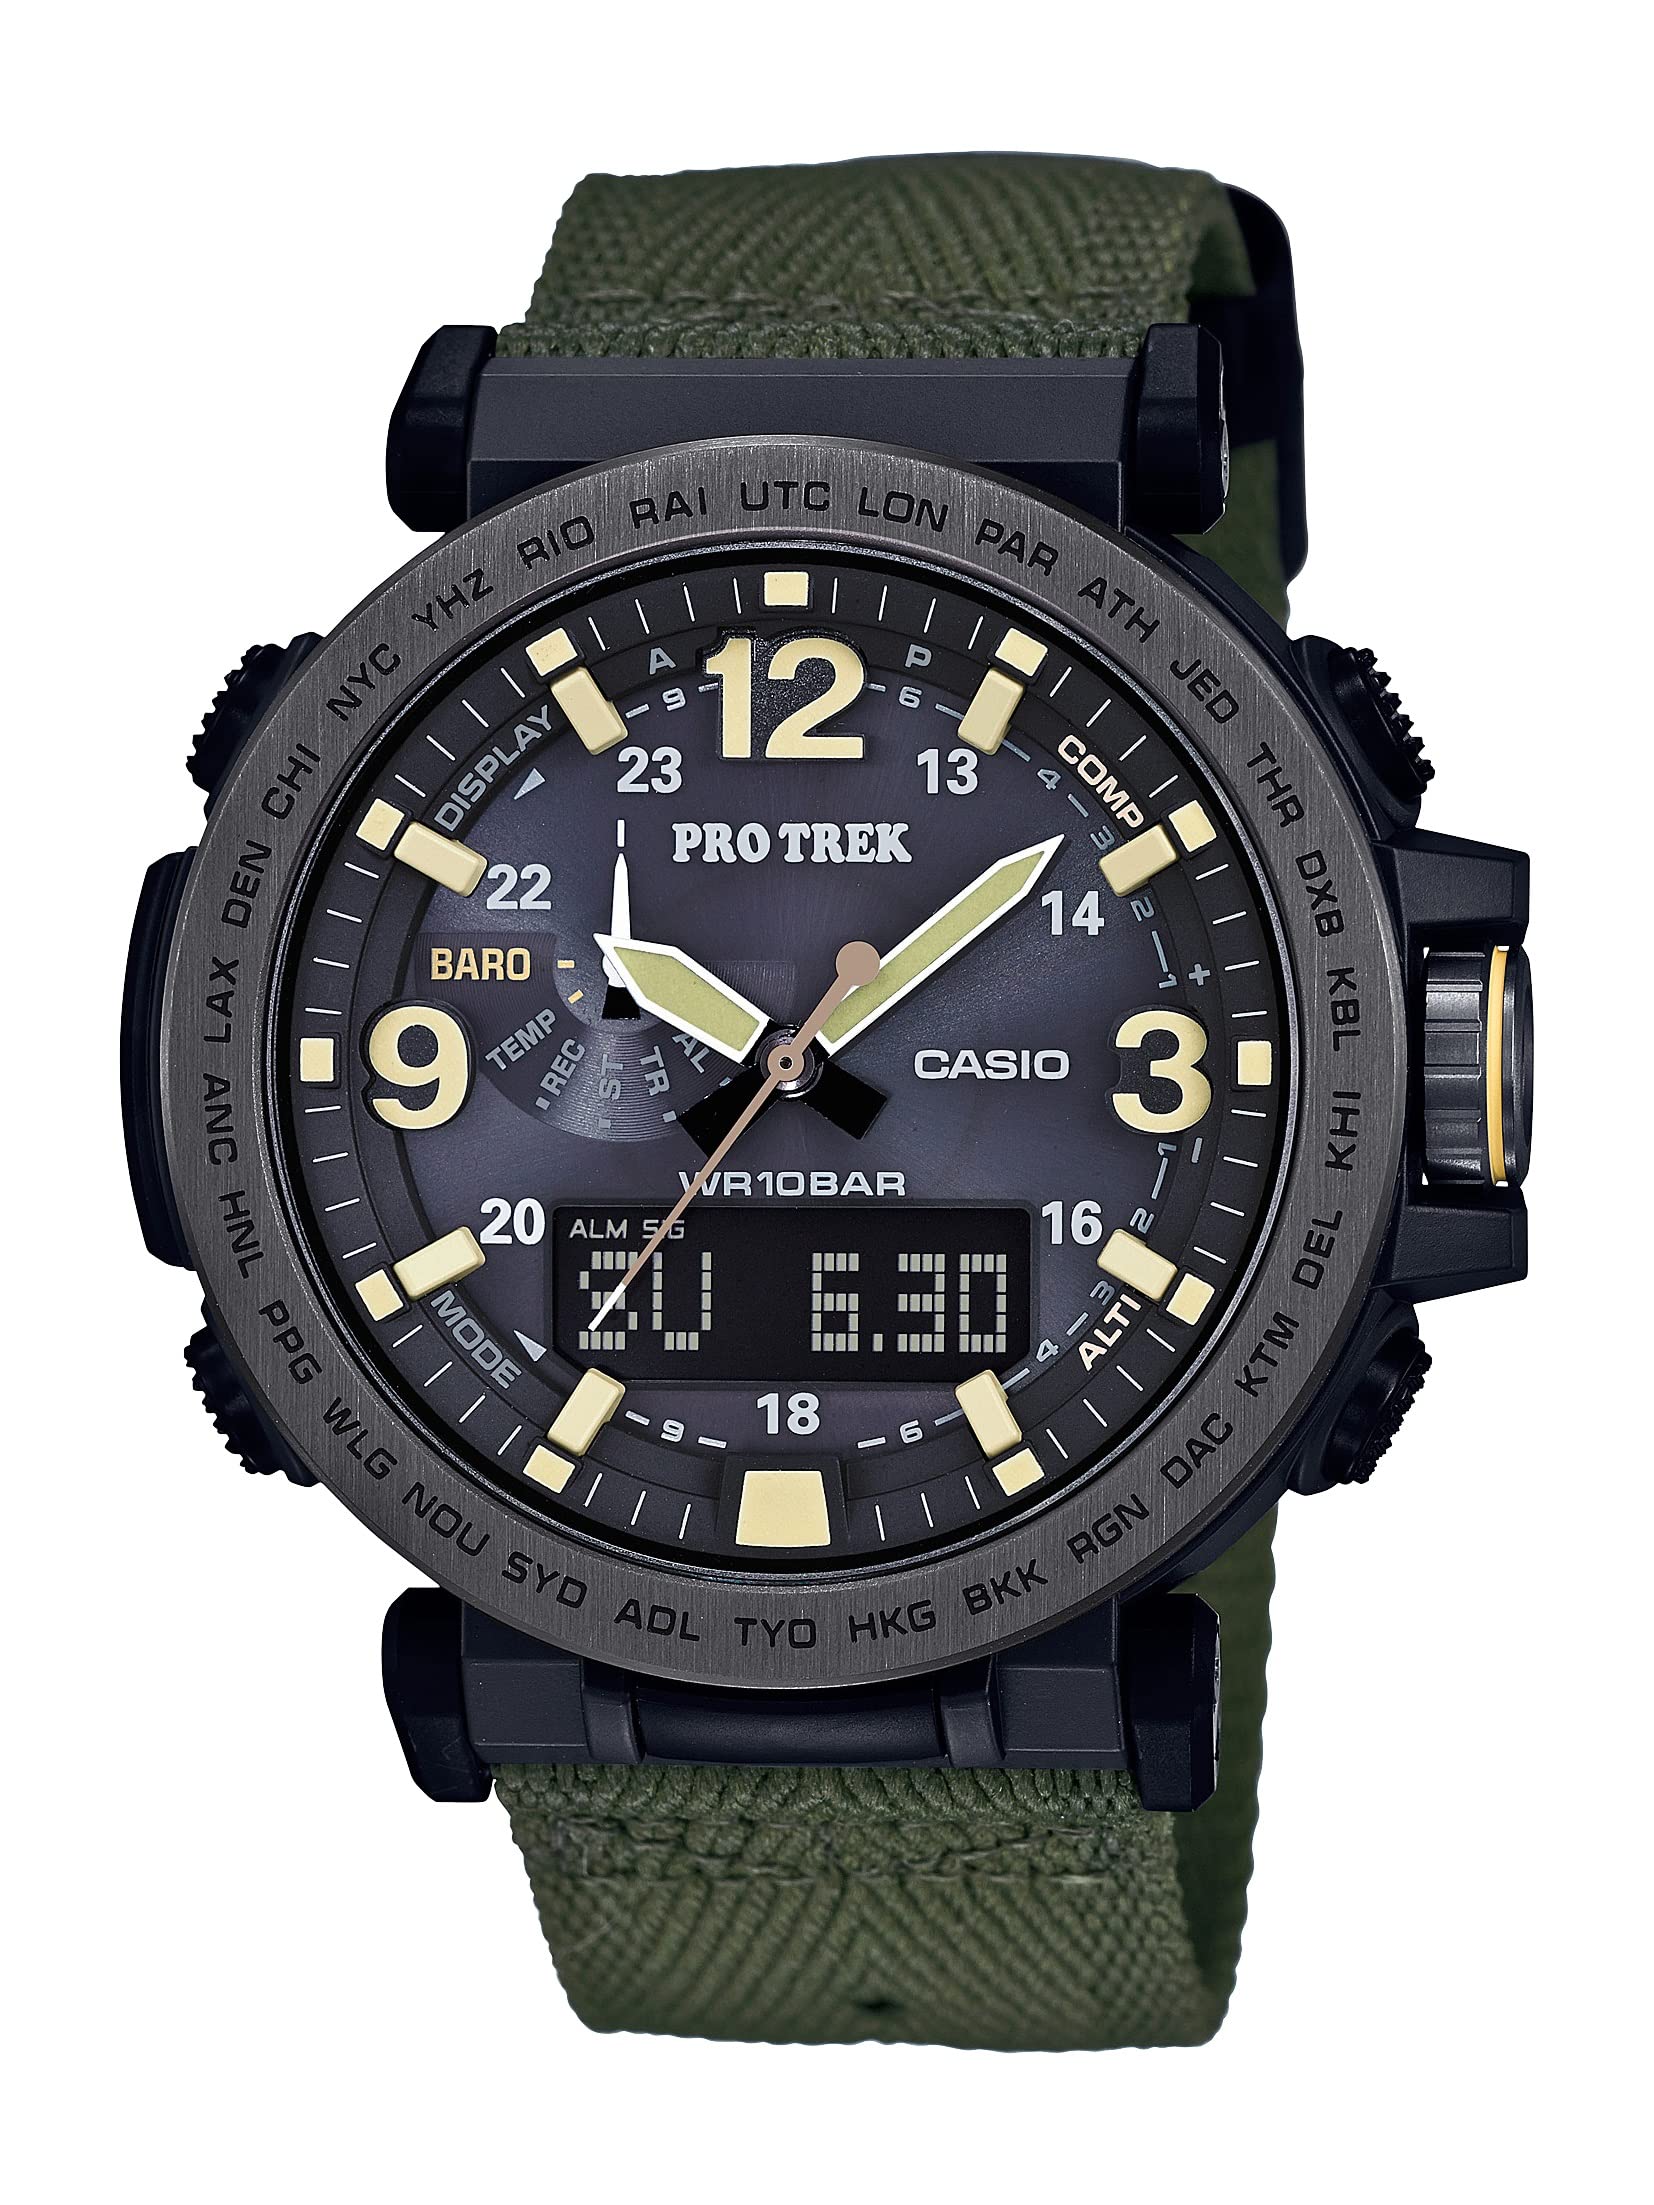 カシオ メンズ腕時計プロトレック クォーツ式 樹脂 布地 カジュアル腕時計 グリーン PRG-600YB-